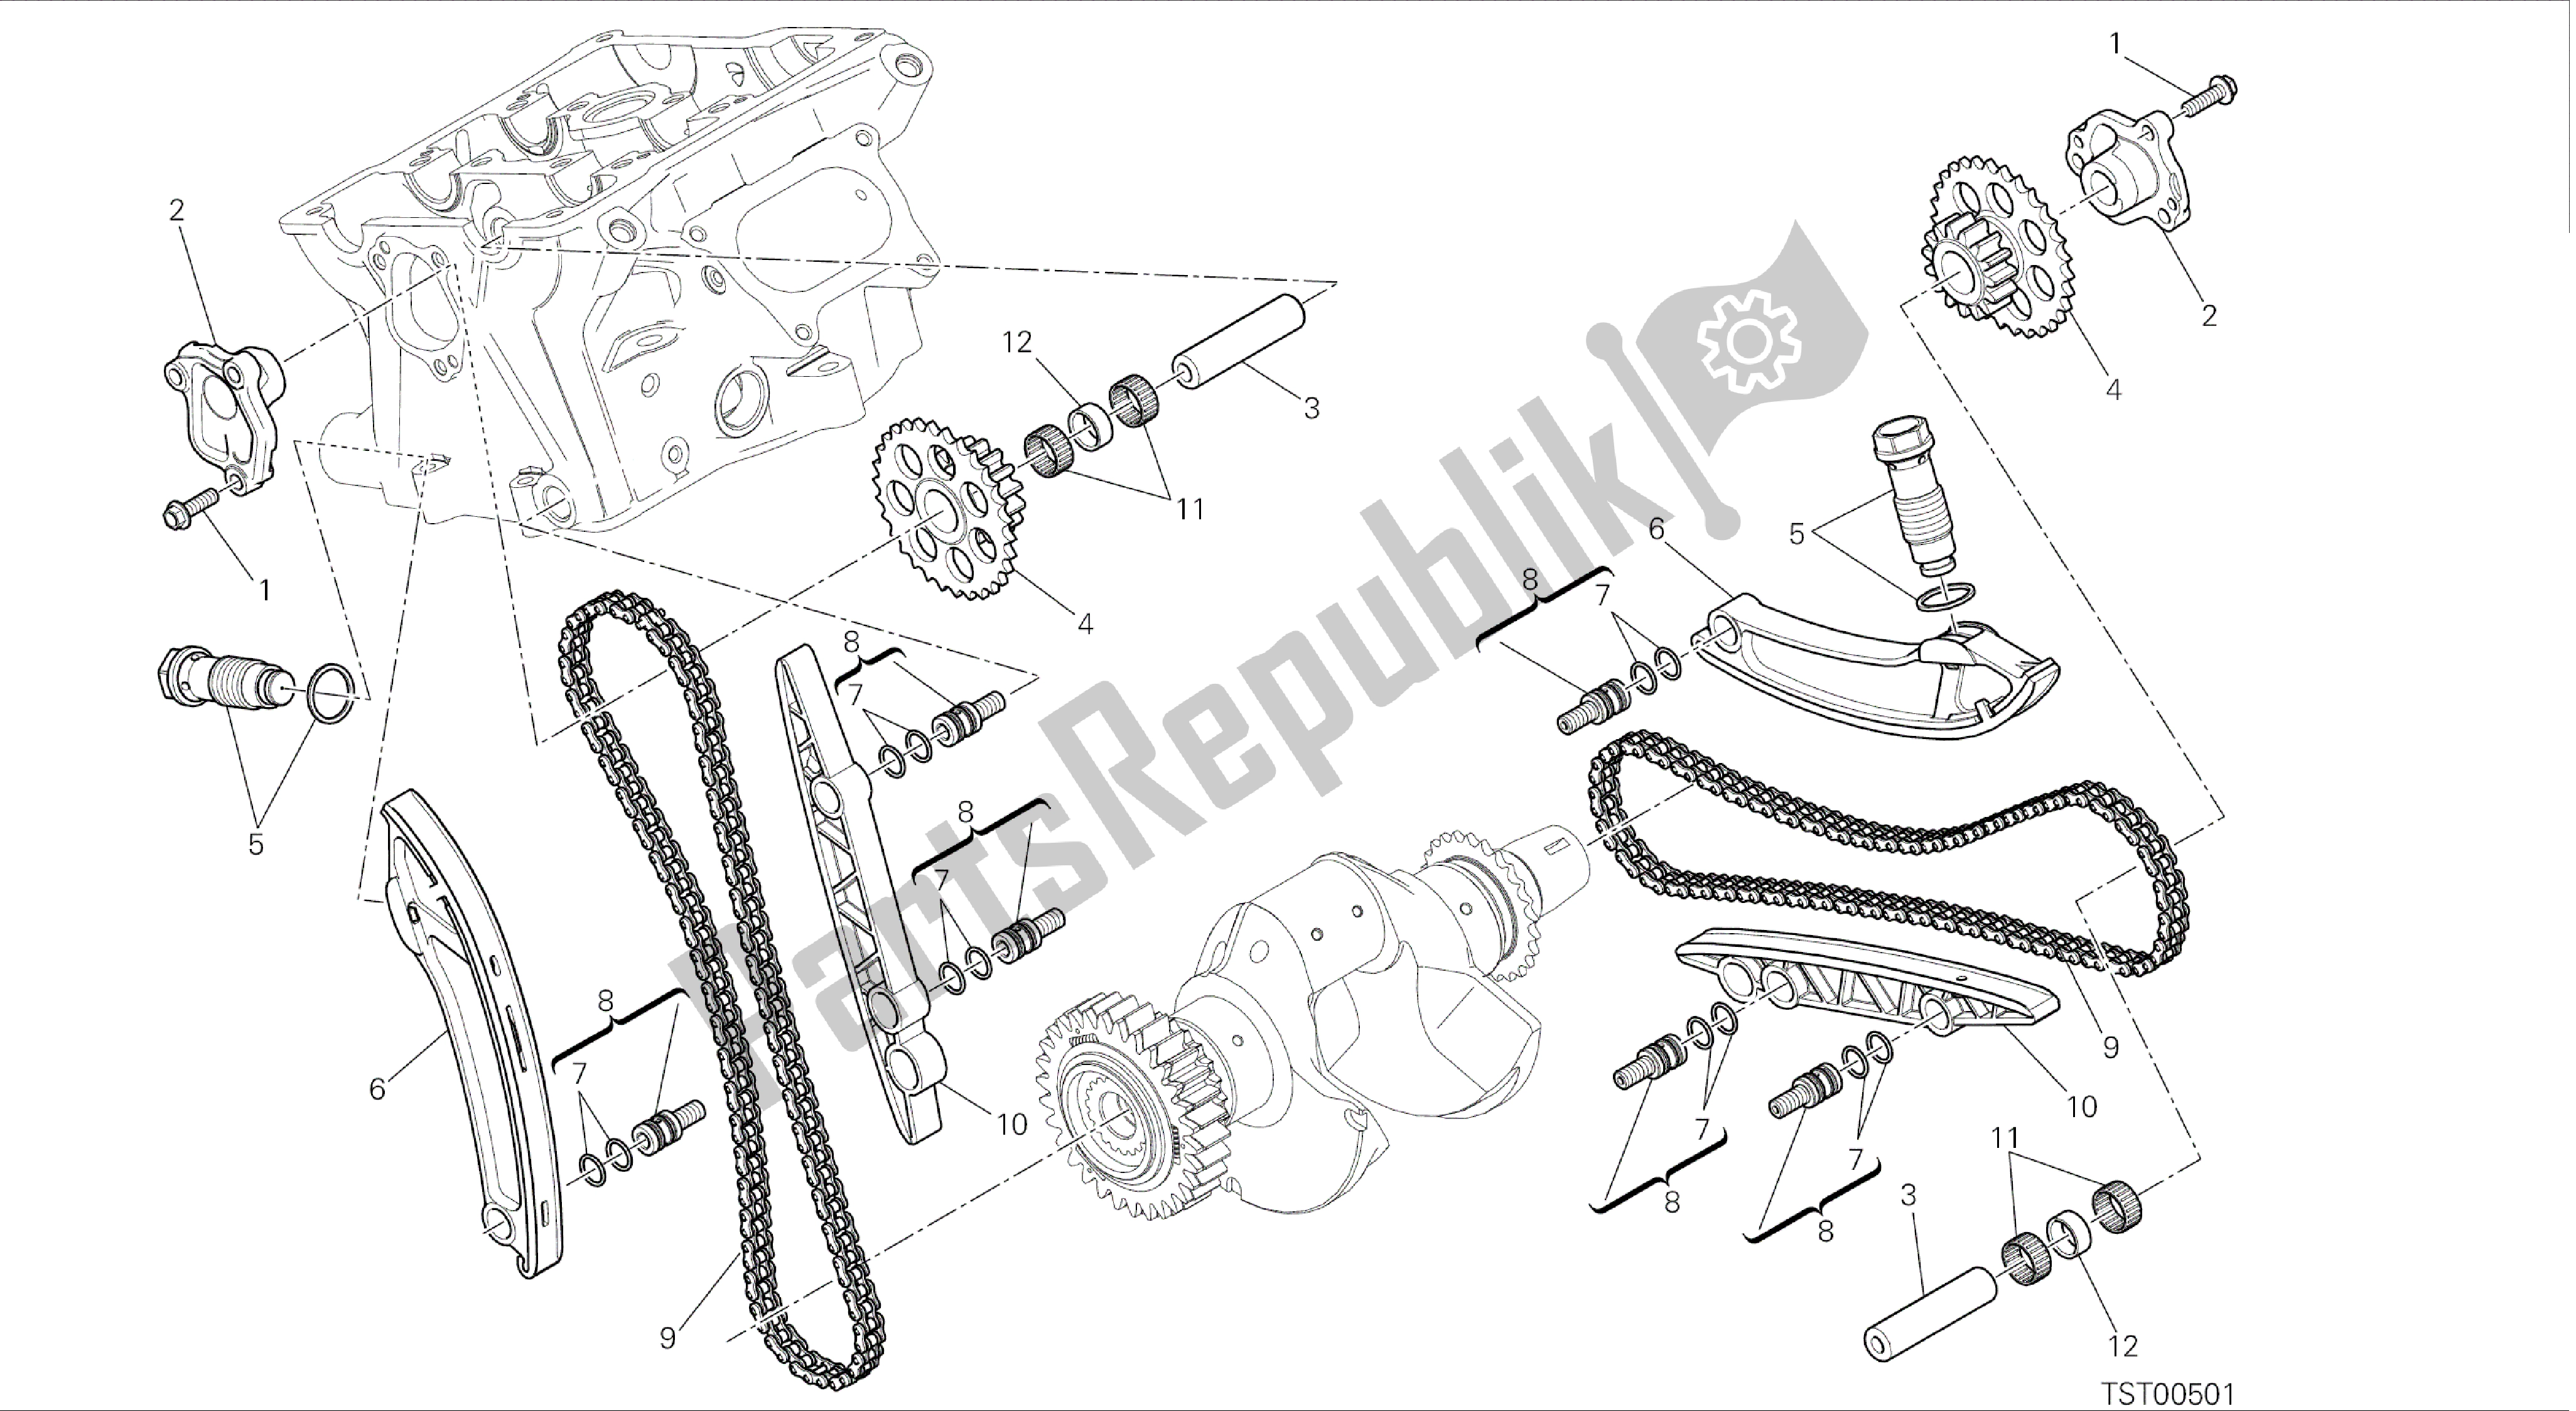 Alle onderdelen voor de Tekening 008 - Distribuzione [mod: 899 Abs; Xst: Aus, Eur, Fra, Jap, Twn] Groepsmotor van de Ducati Panigale 899 2014